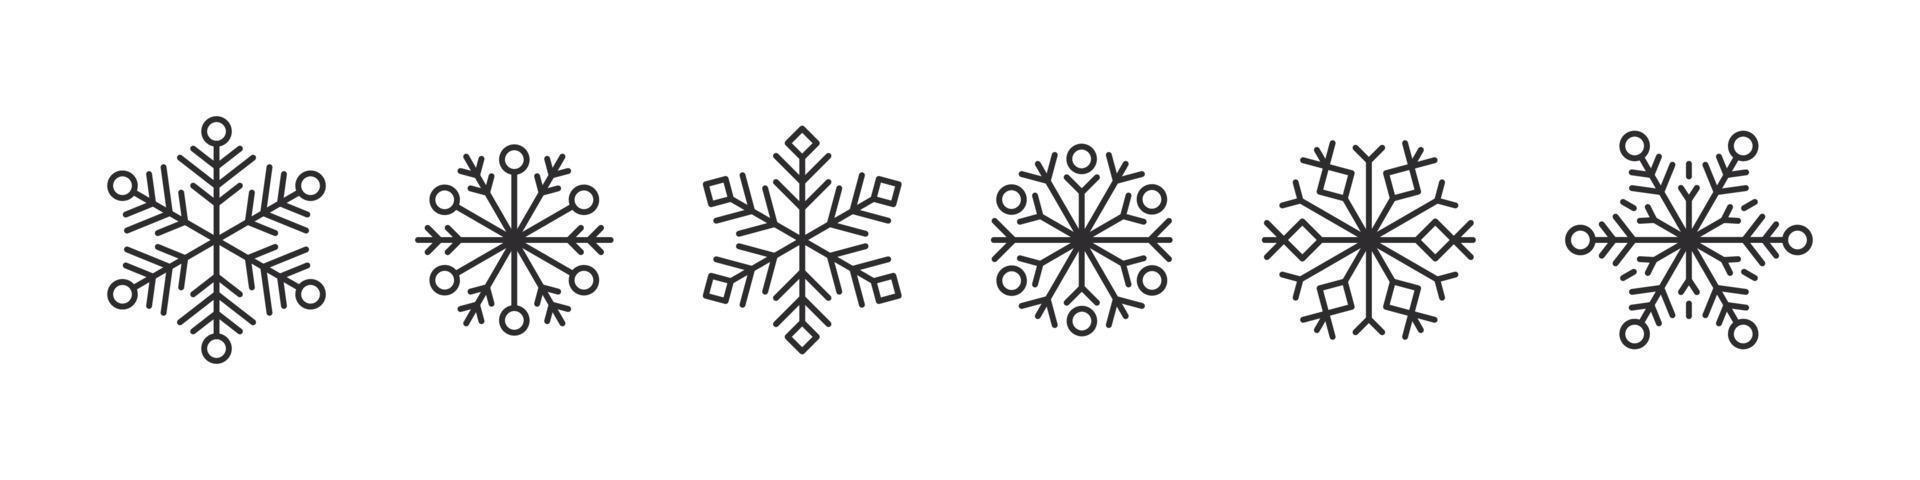 iconos de copos de nieve. símbolo de invierno de cristal de hielo. conjunto de copos de nieve. ilustración vectorial vector